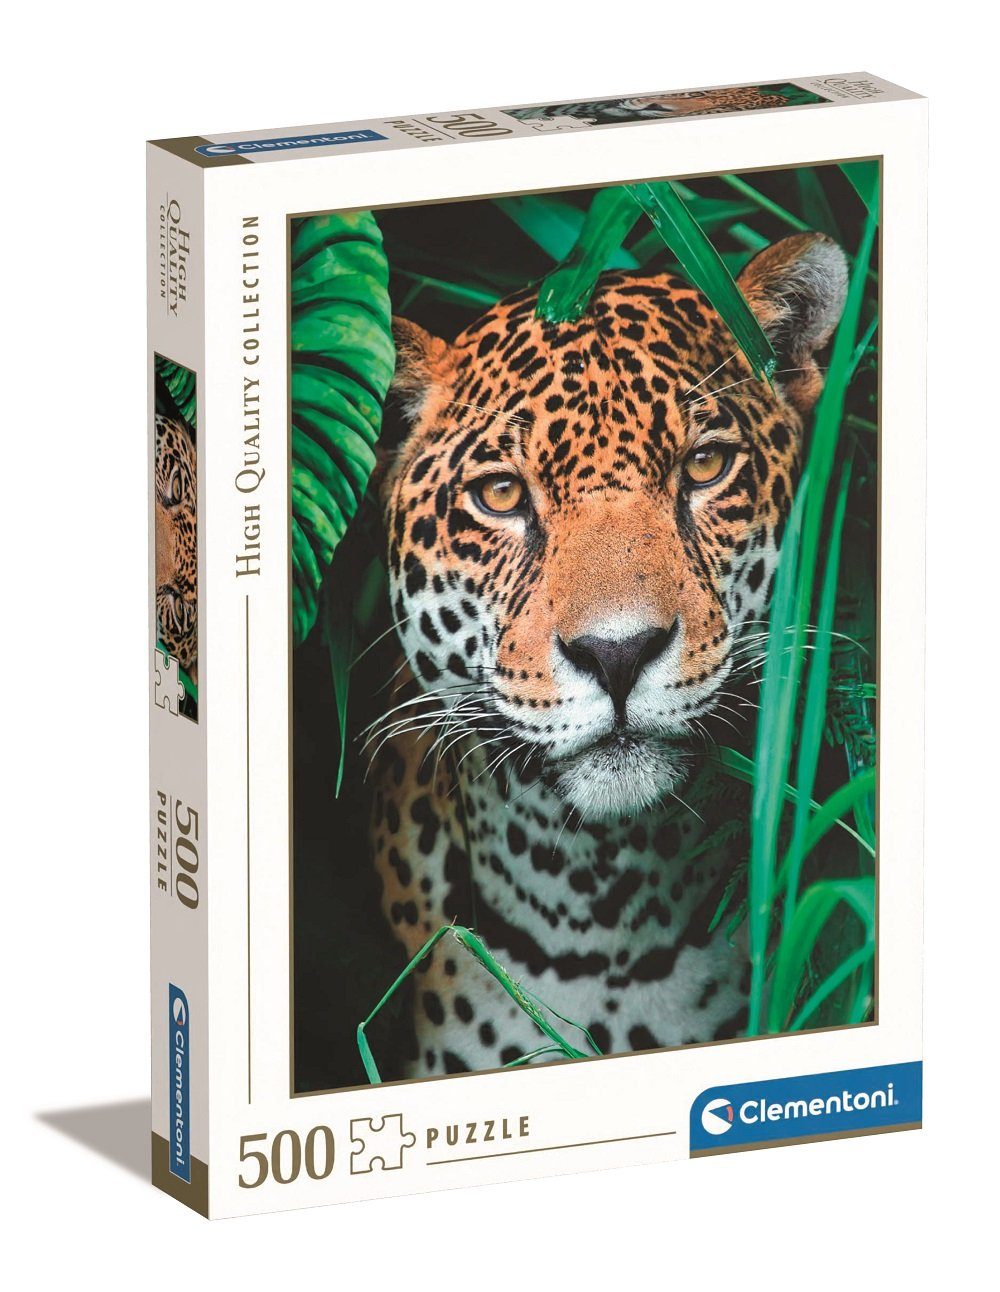 Clementoni® Puzzle Clementoni Jaguar im Dschungel 500 Teile Puzzle, 500 Puzzleteile